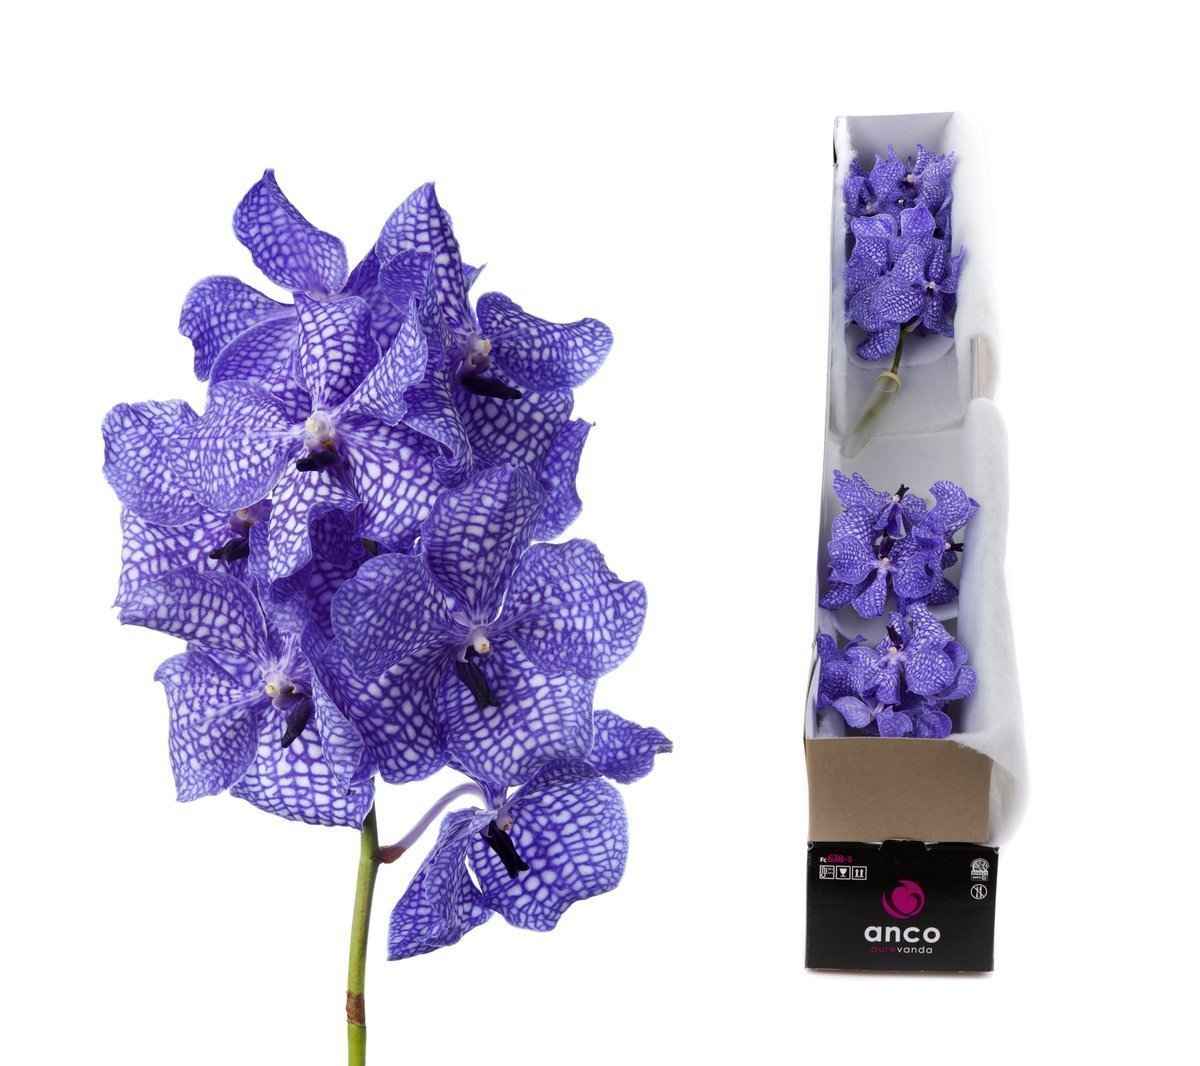 Срезанные цветы оптом Vanda kanchana delft blue per stem от 16шт.. из Голландии с доставкой по России